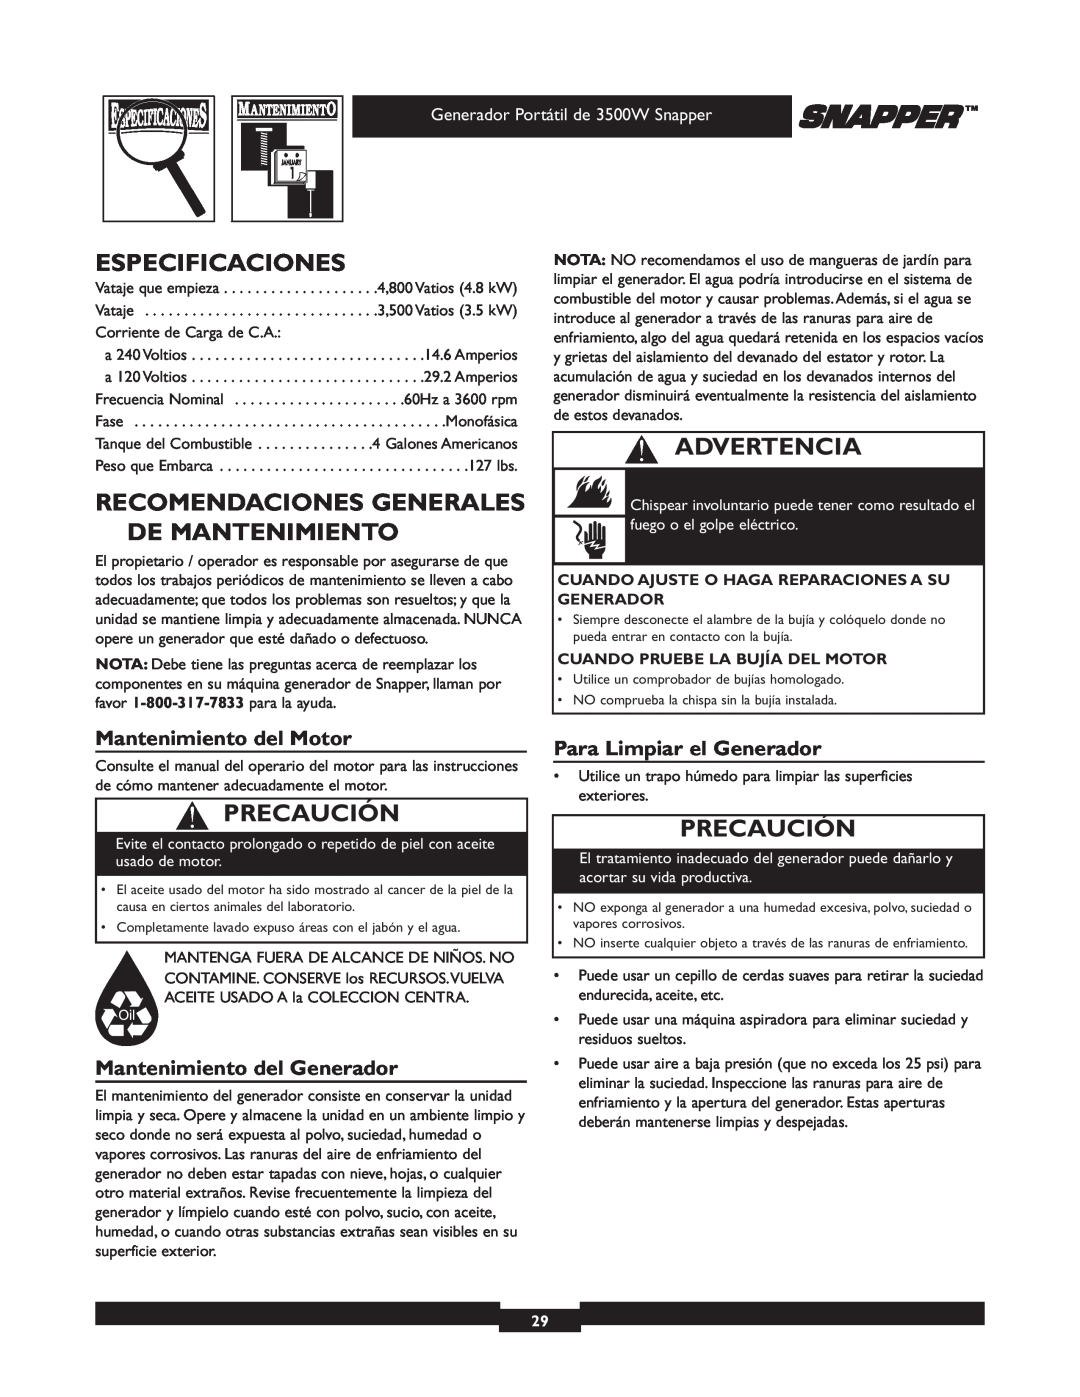 Snapper 030214 manual Especificaciones, Recomendaciones Generales De Mantenimiento, Mantenimiento del Motor, Advertencia 